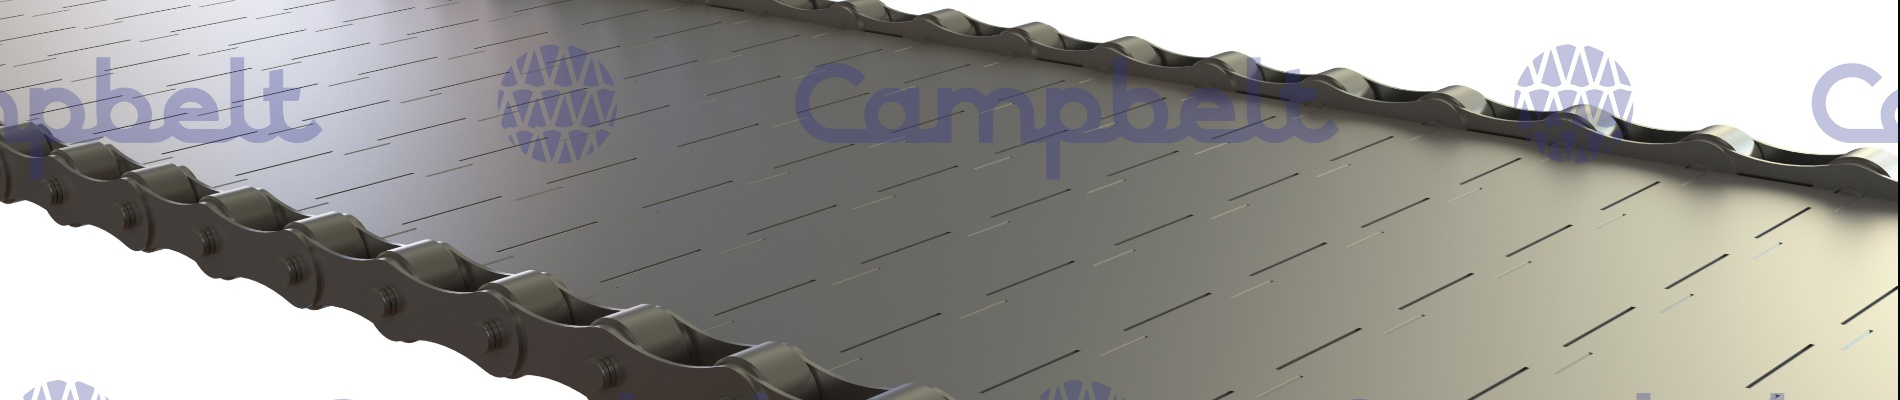 Campbelt | Bandas metálicas de placas (CT-LP)